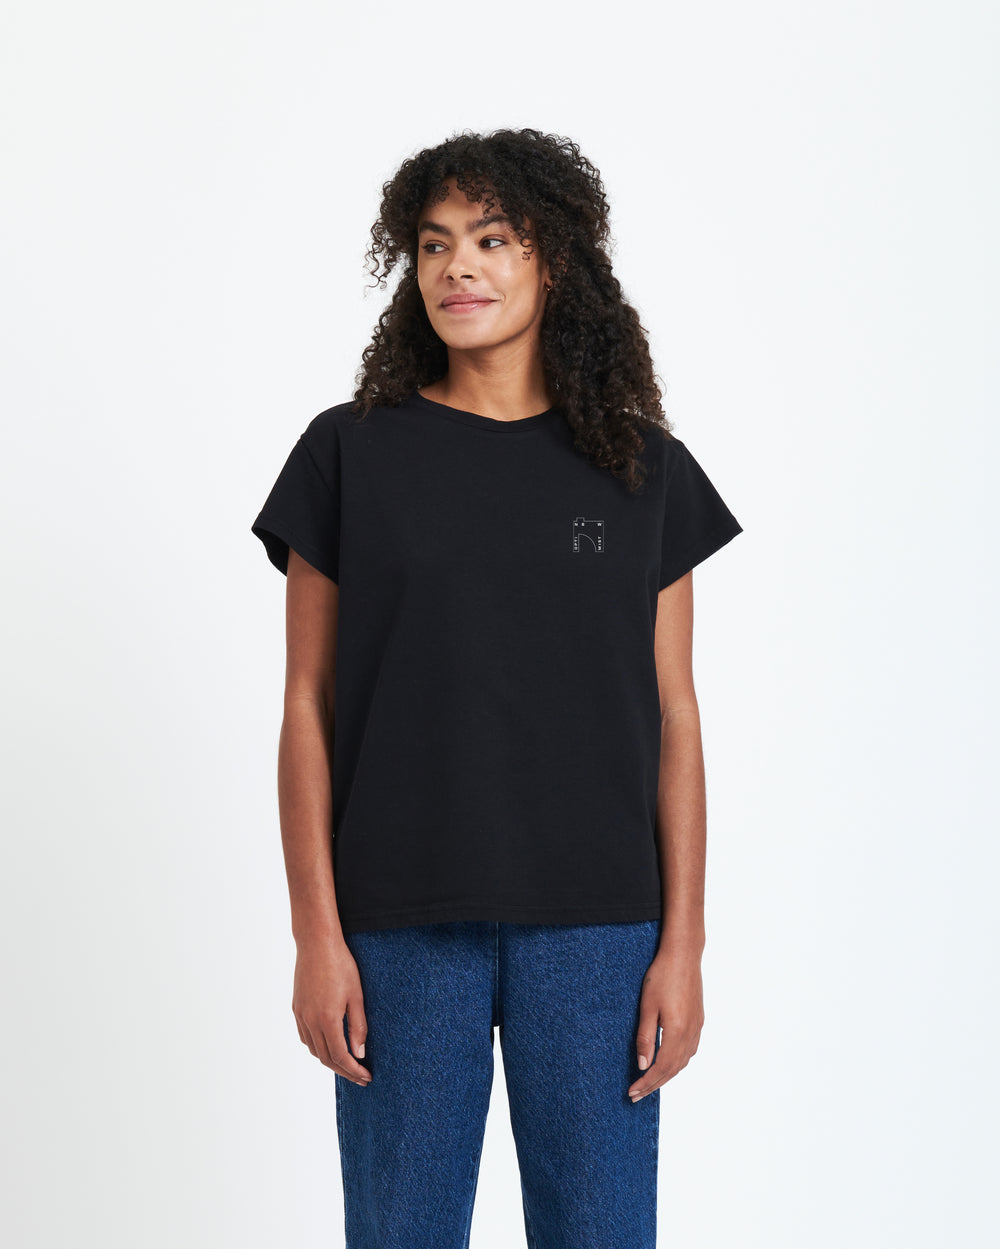 New Optimist womenswear Cascata | Heavyweight T-shirt factory print T-shirt